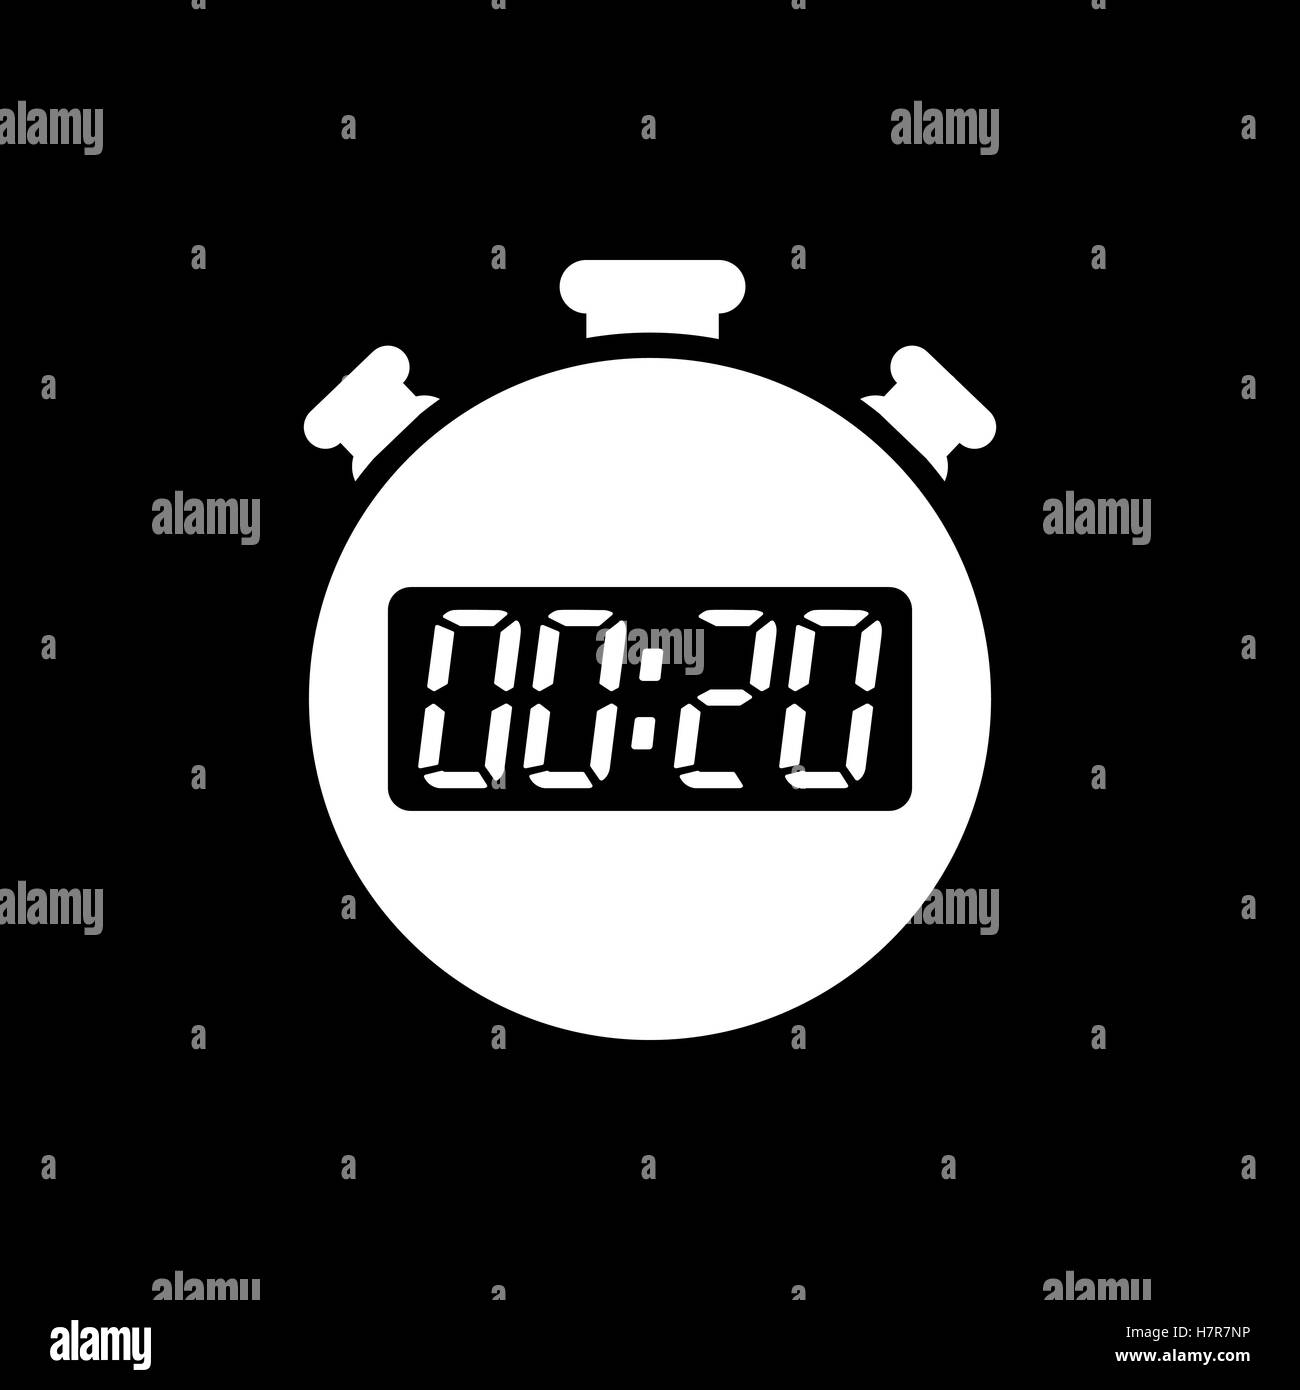 Таймер 15 секунд. Таймер часы 30 секунд. Секундомер символ. Часы иконка вектор. Часы таймер на 15 н.